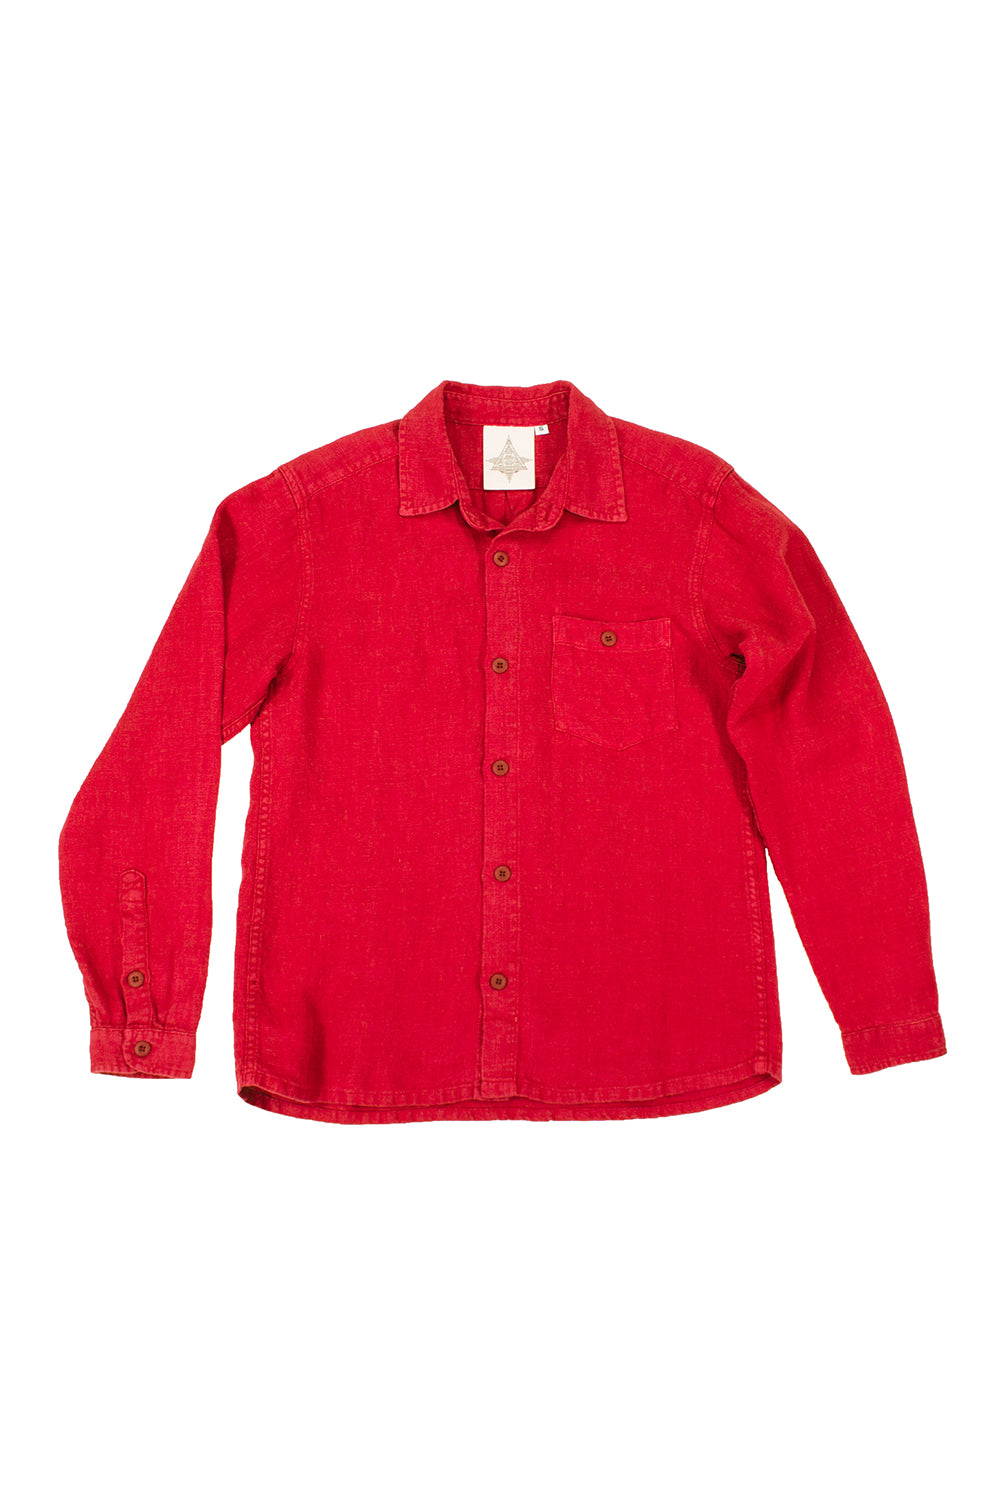 Lassen 100% Hemp Shirt - Sale Colors | Jungmaven Hemp Clothing & Accessories / Color: Cherry Red